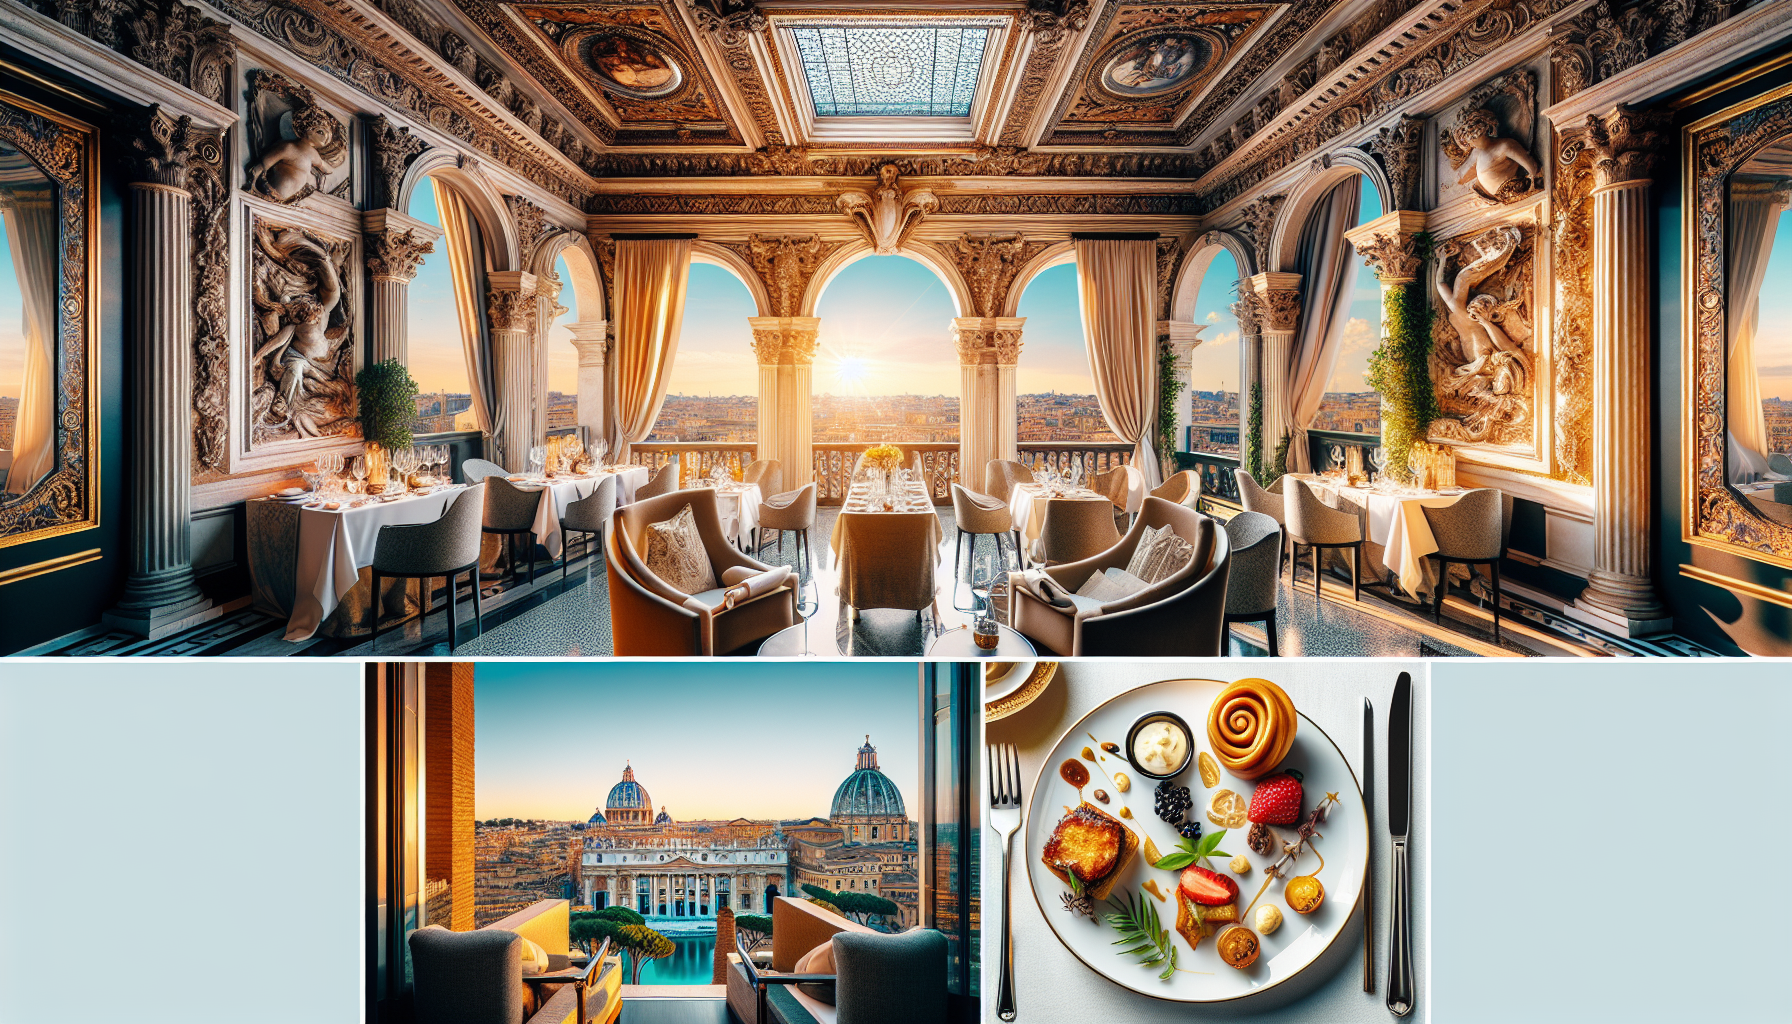 découvrez les expériences uniques offertes par les prestigieux hôtels de luxe à rome et vivez un séjour inoubliable au cœur de l'élégance et du raffinement.